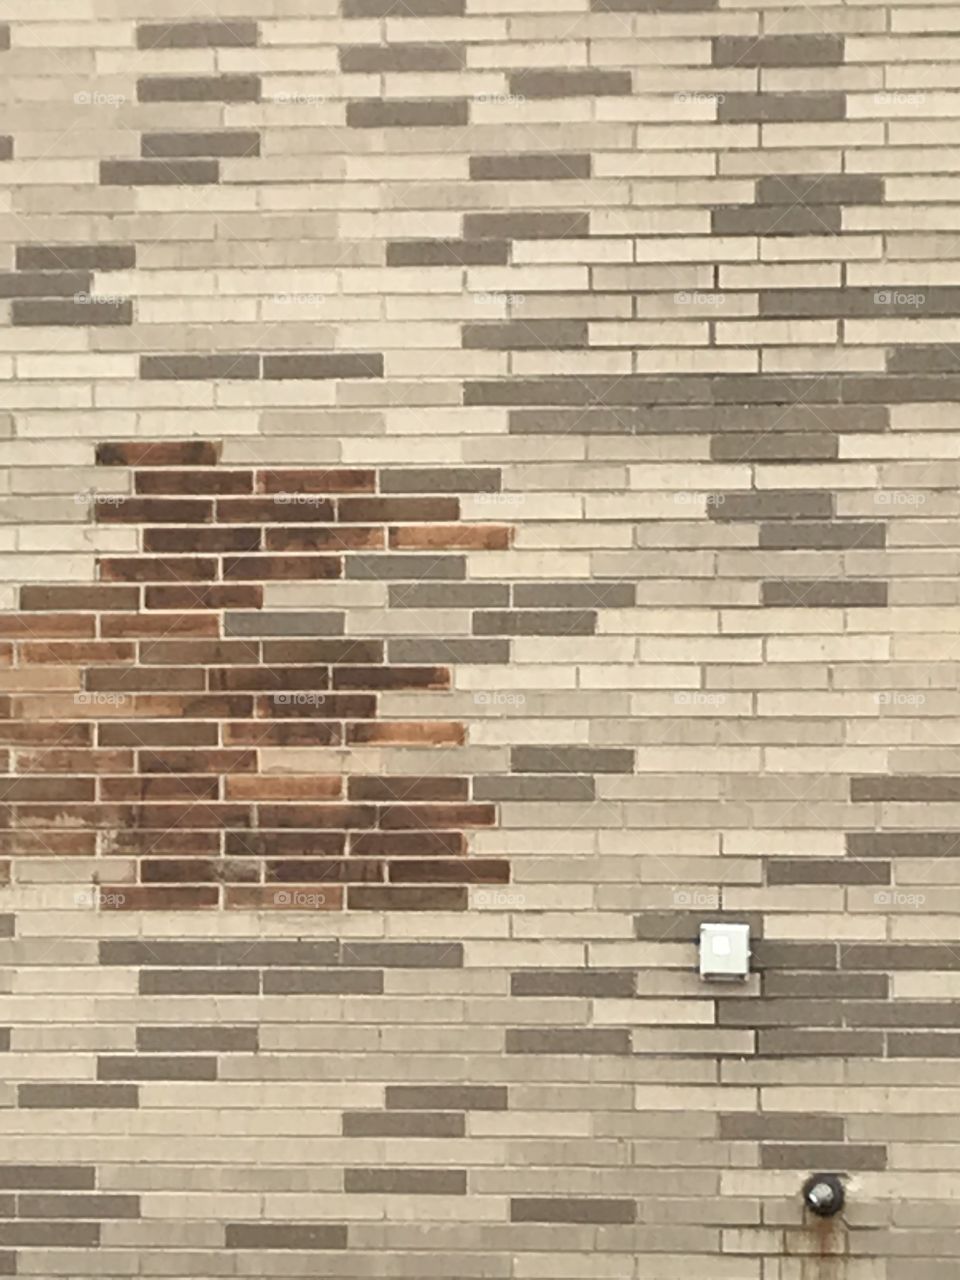 Brick wall (non person) 